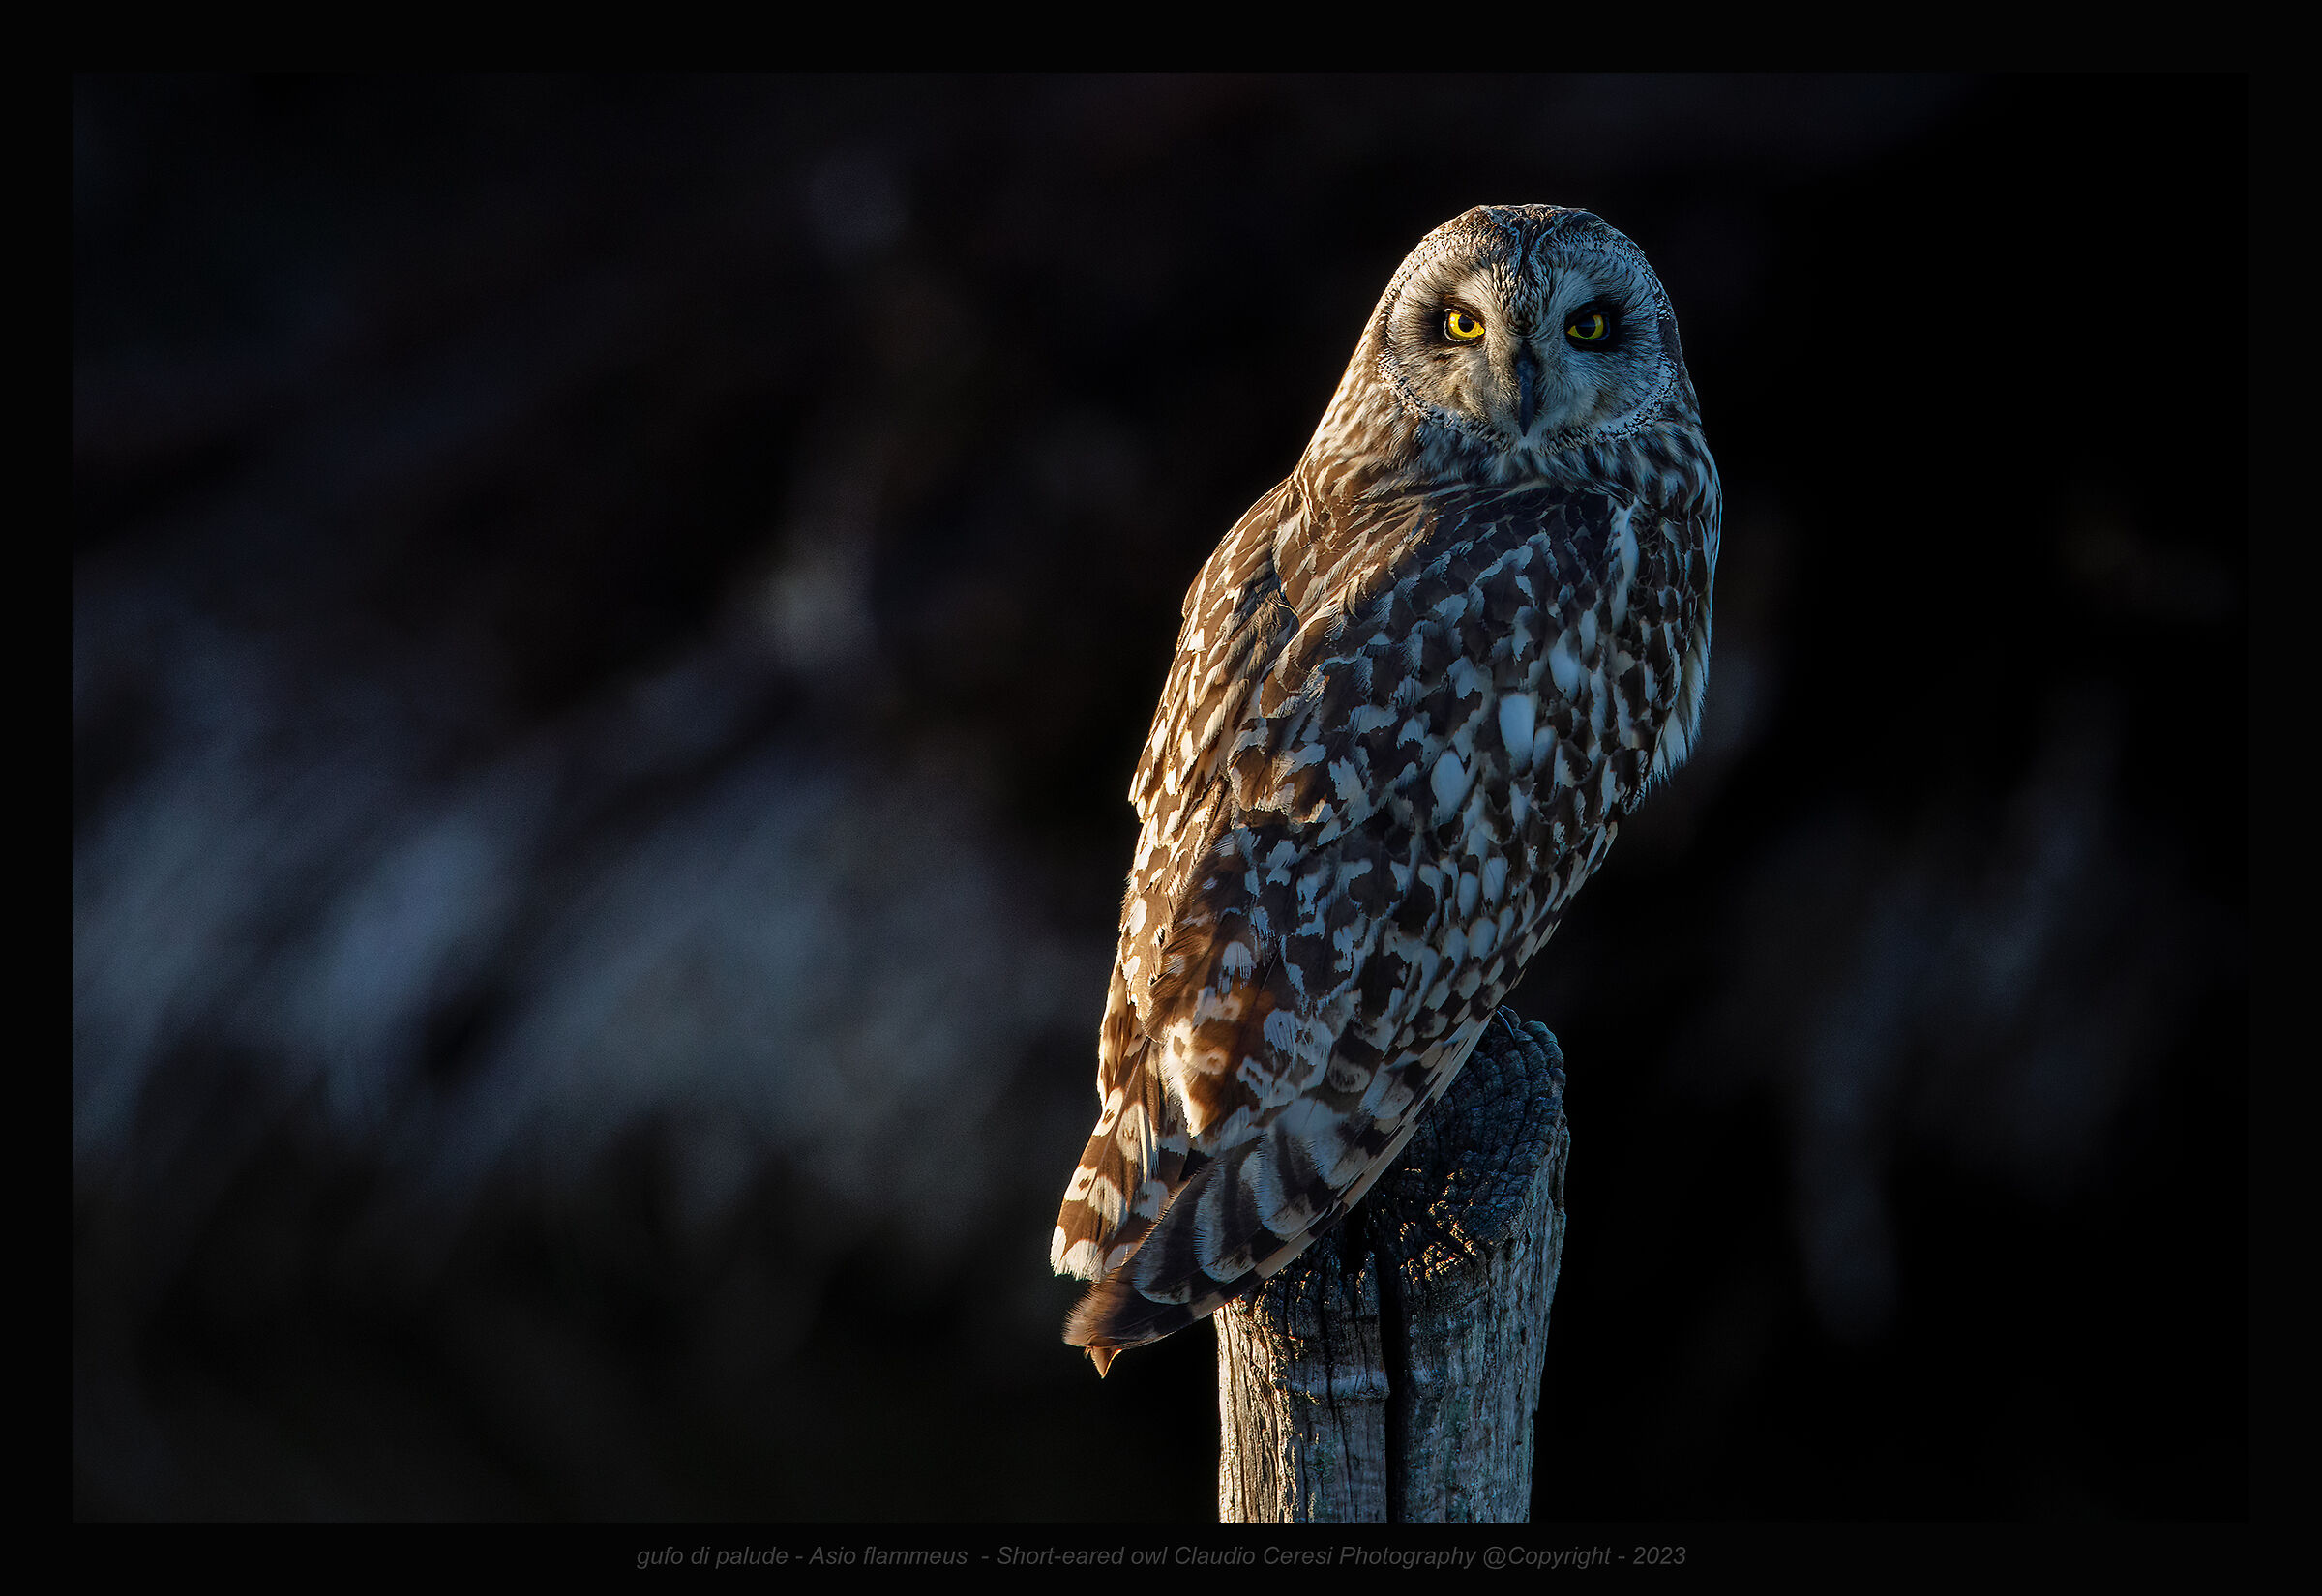 Marsh owl at sunset ...